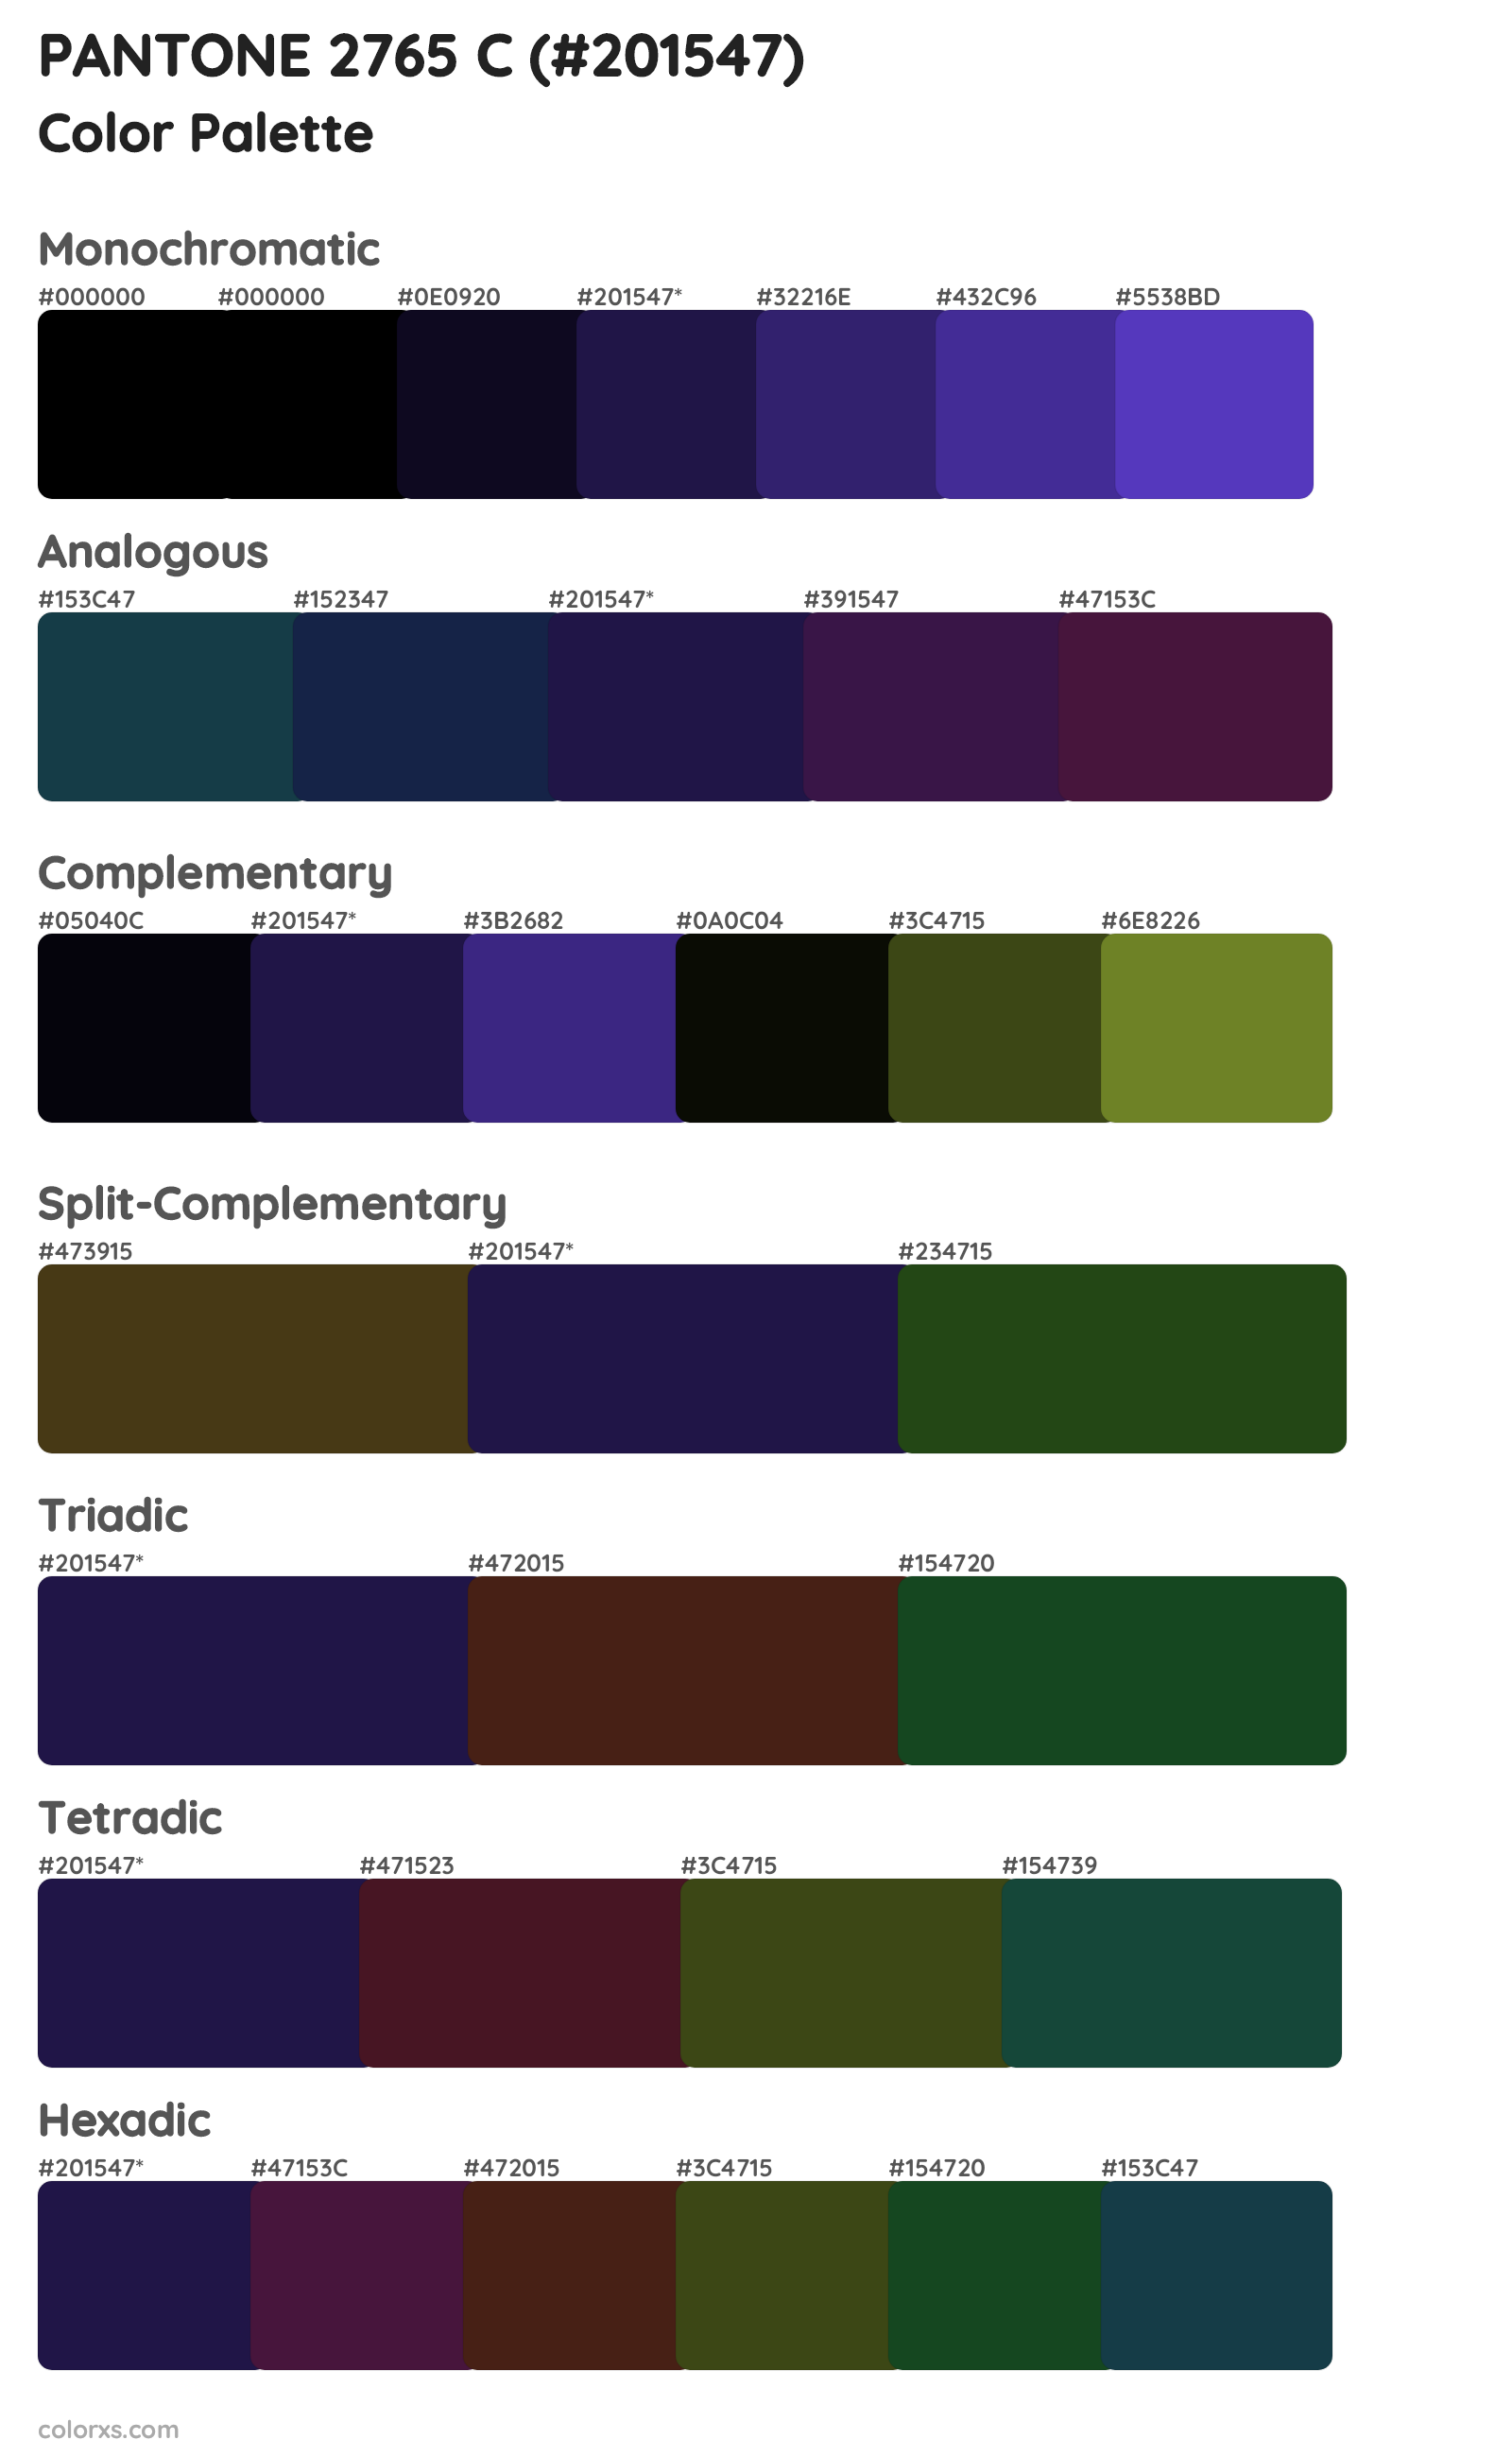 PANTONE 2765 C Color Scheme Palettes